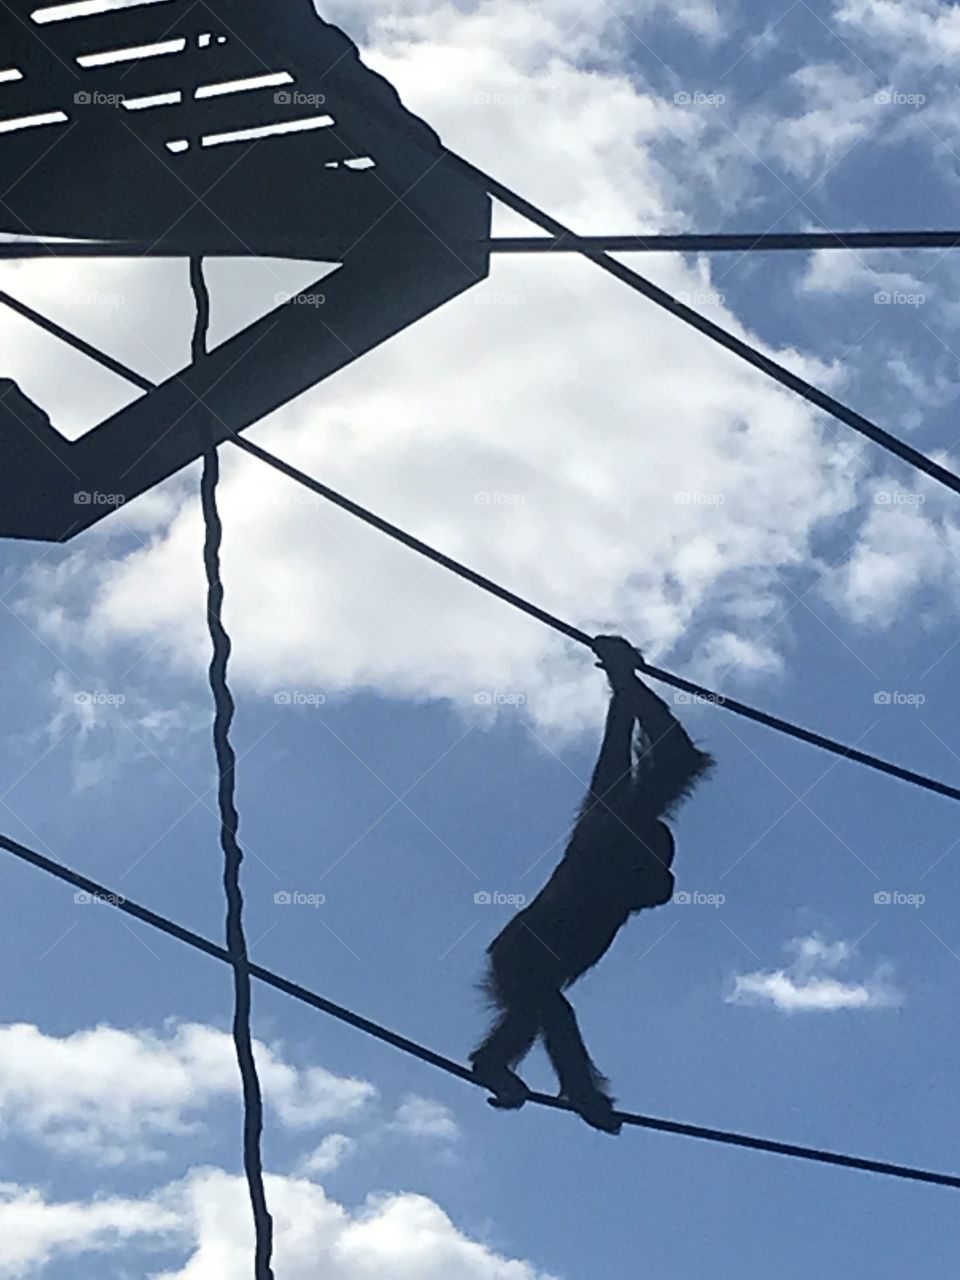 Orangutan climbs on ropes 